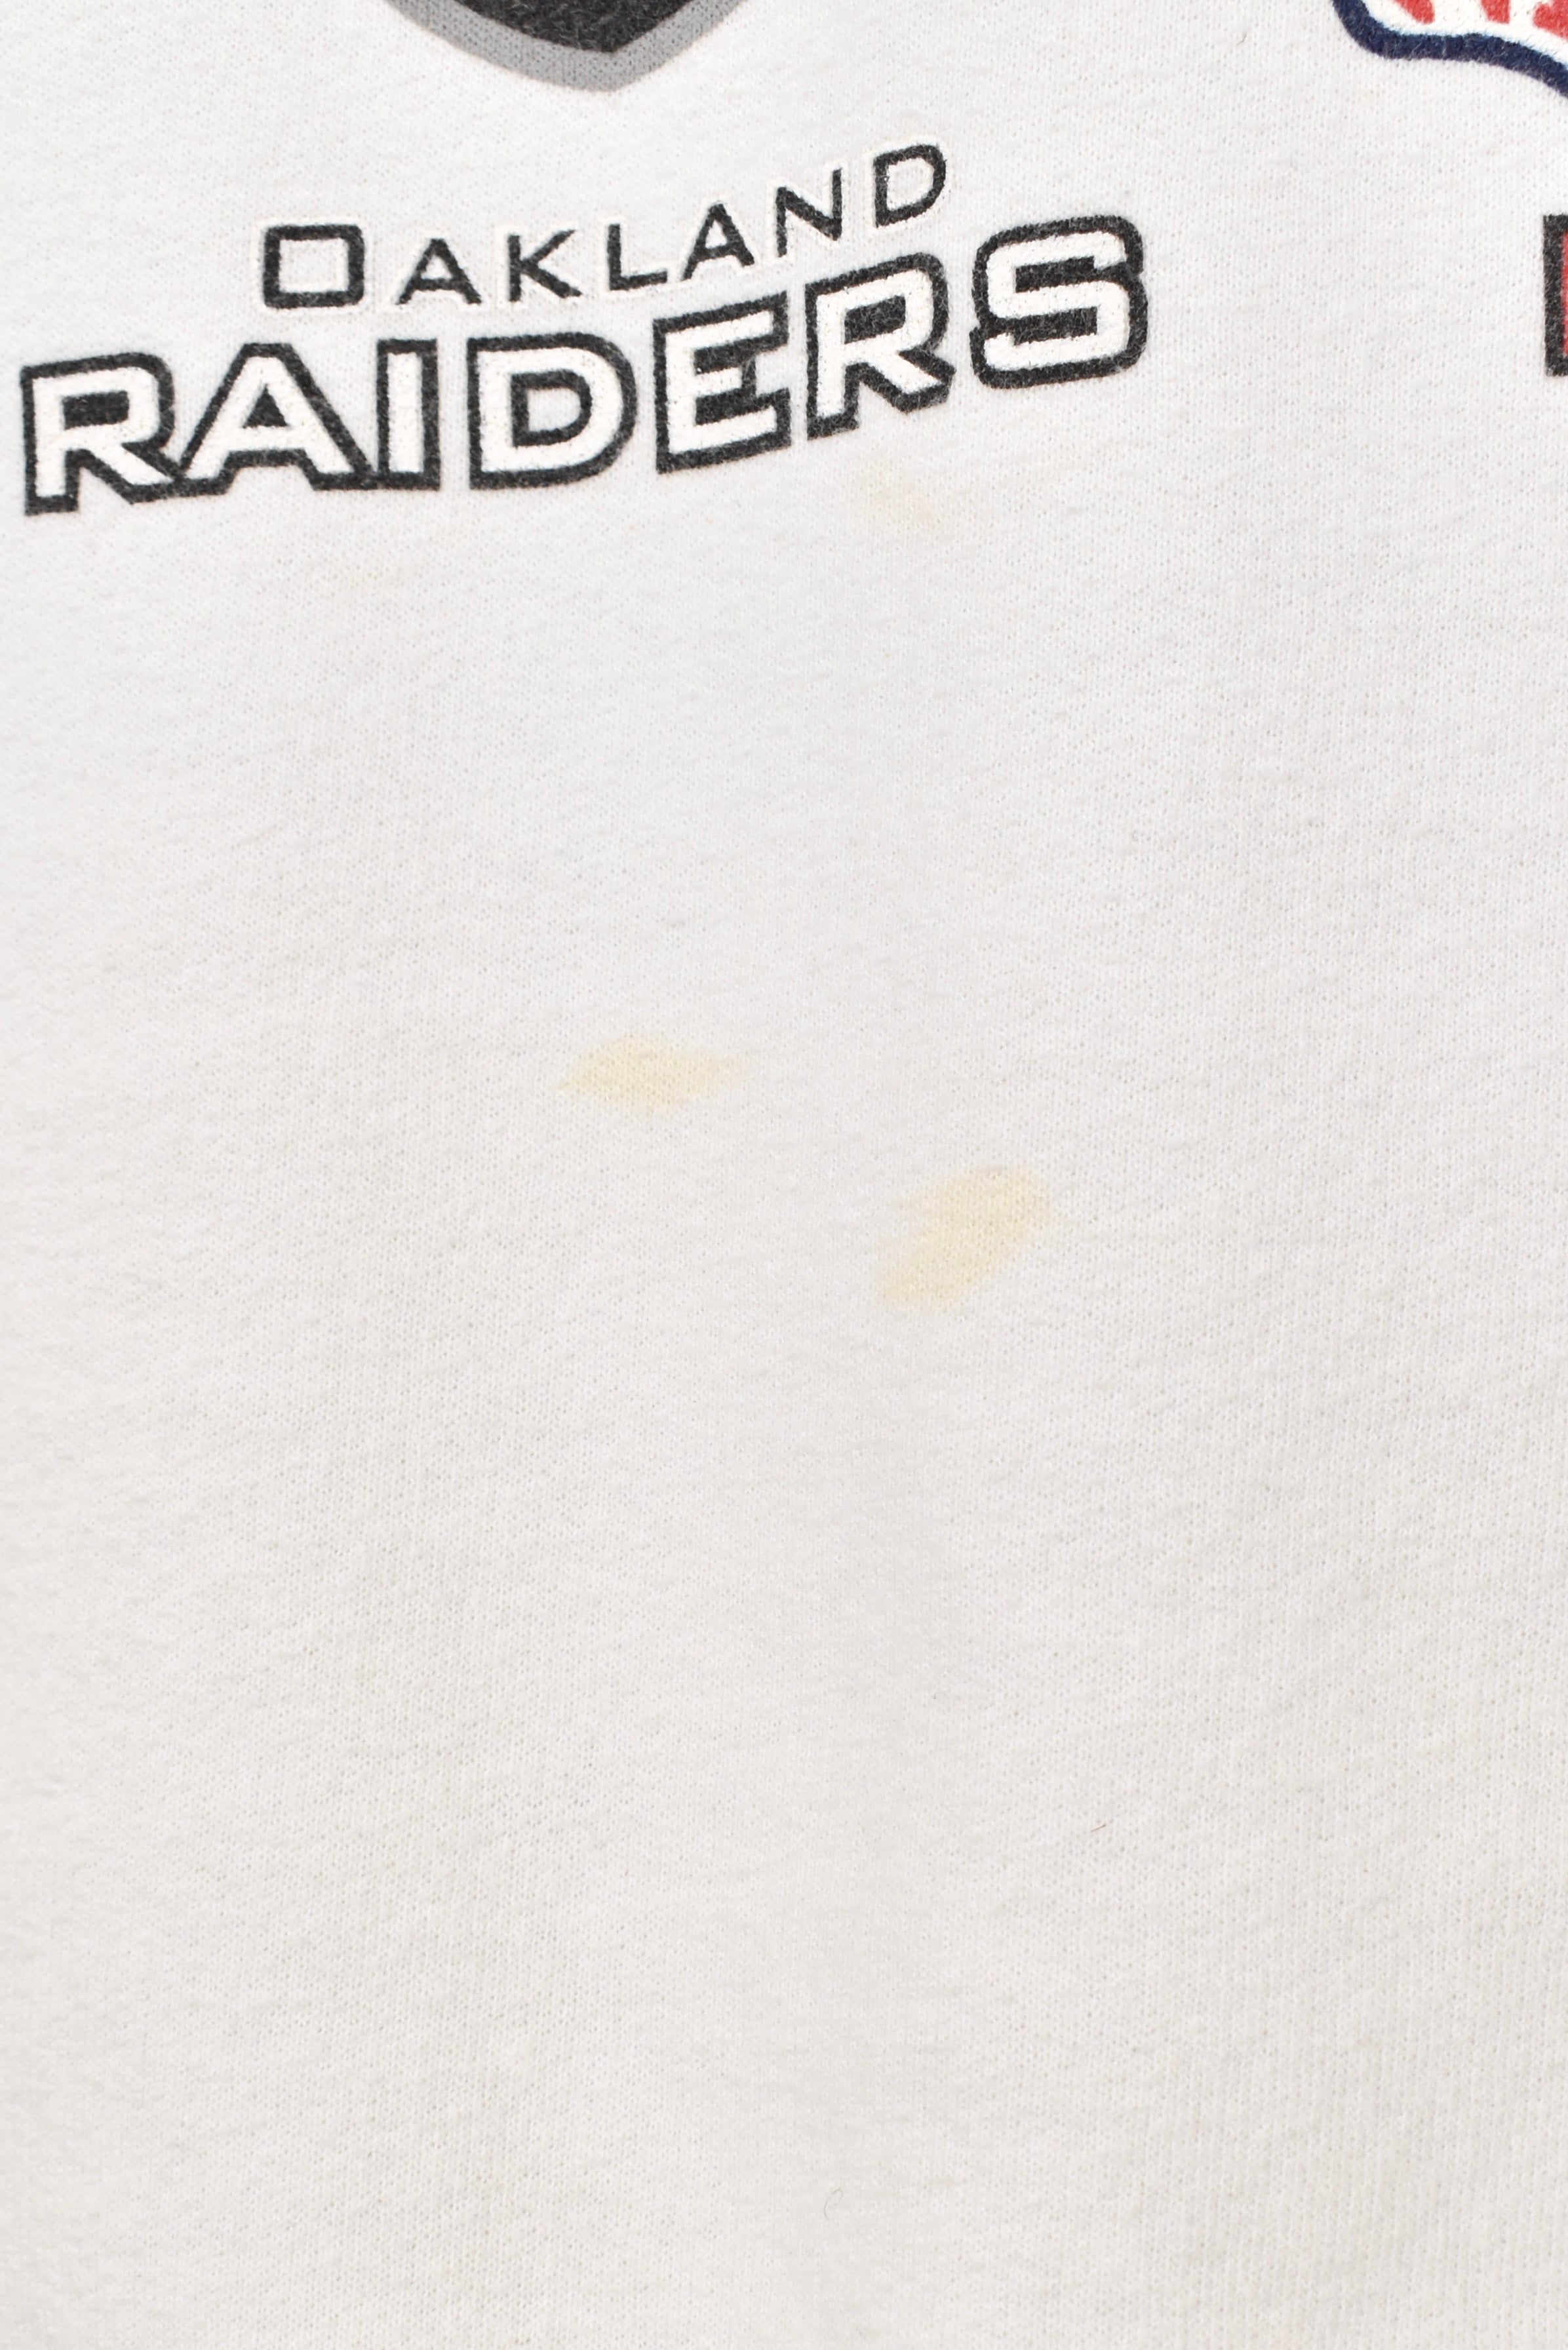 Vintage Super Bowl sweatshirt, NFL Raiders Buccs white graphic crewneck - AU XXL PRO SPORT